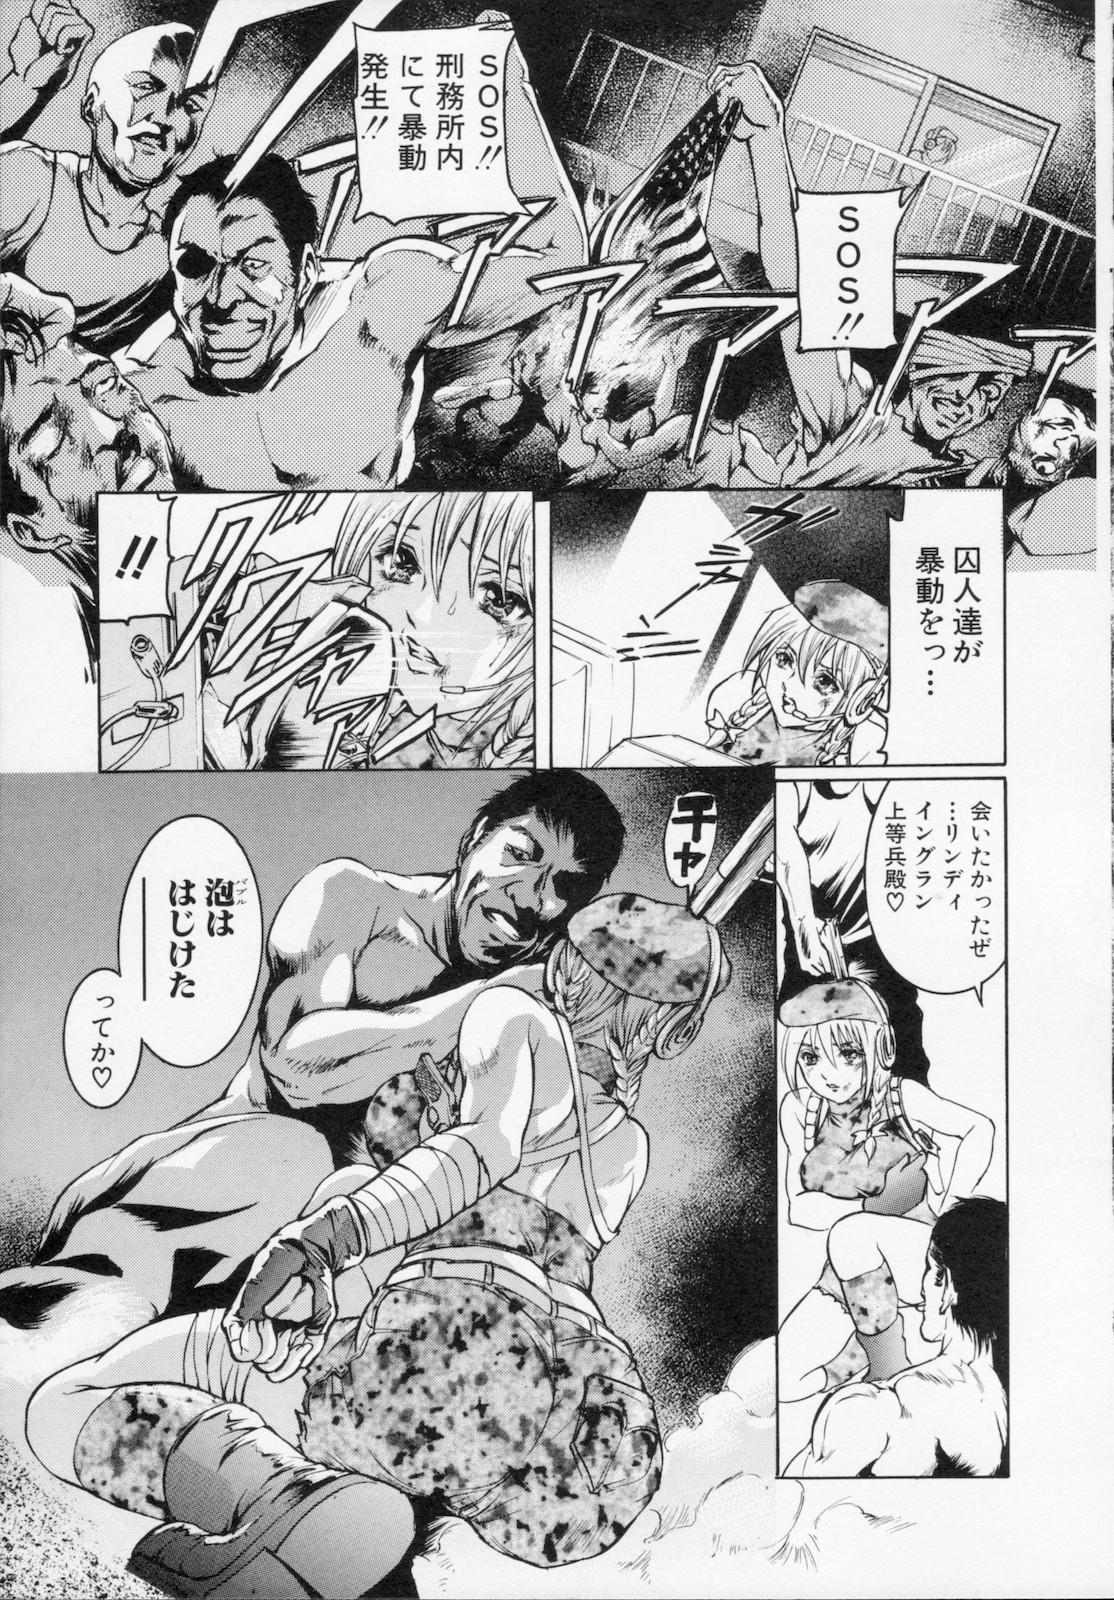 Watashi wa ryoujyoku daisuki na henatai mangaka desu 130